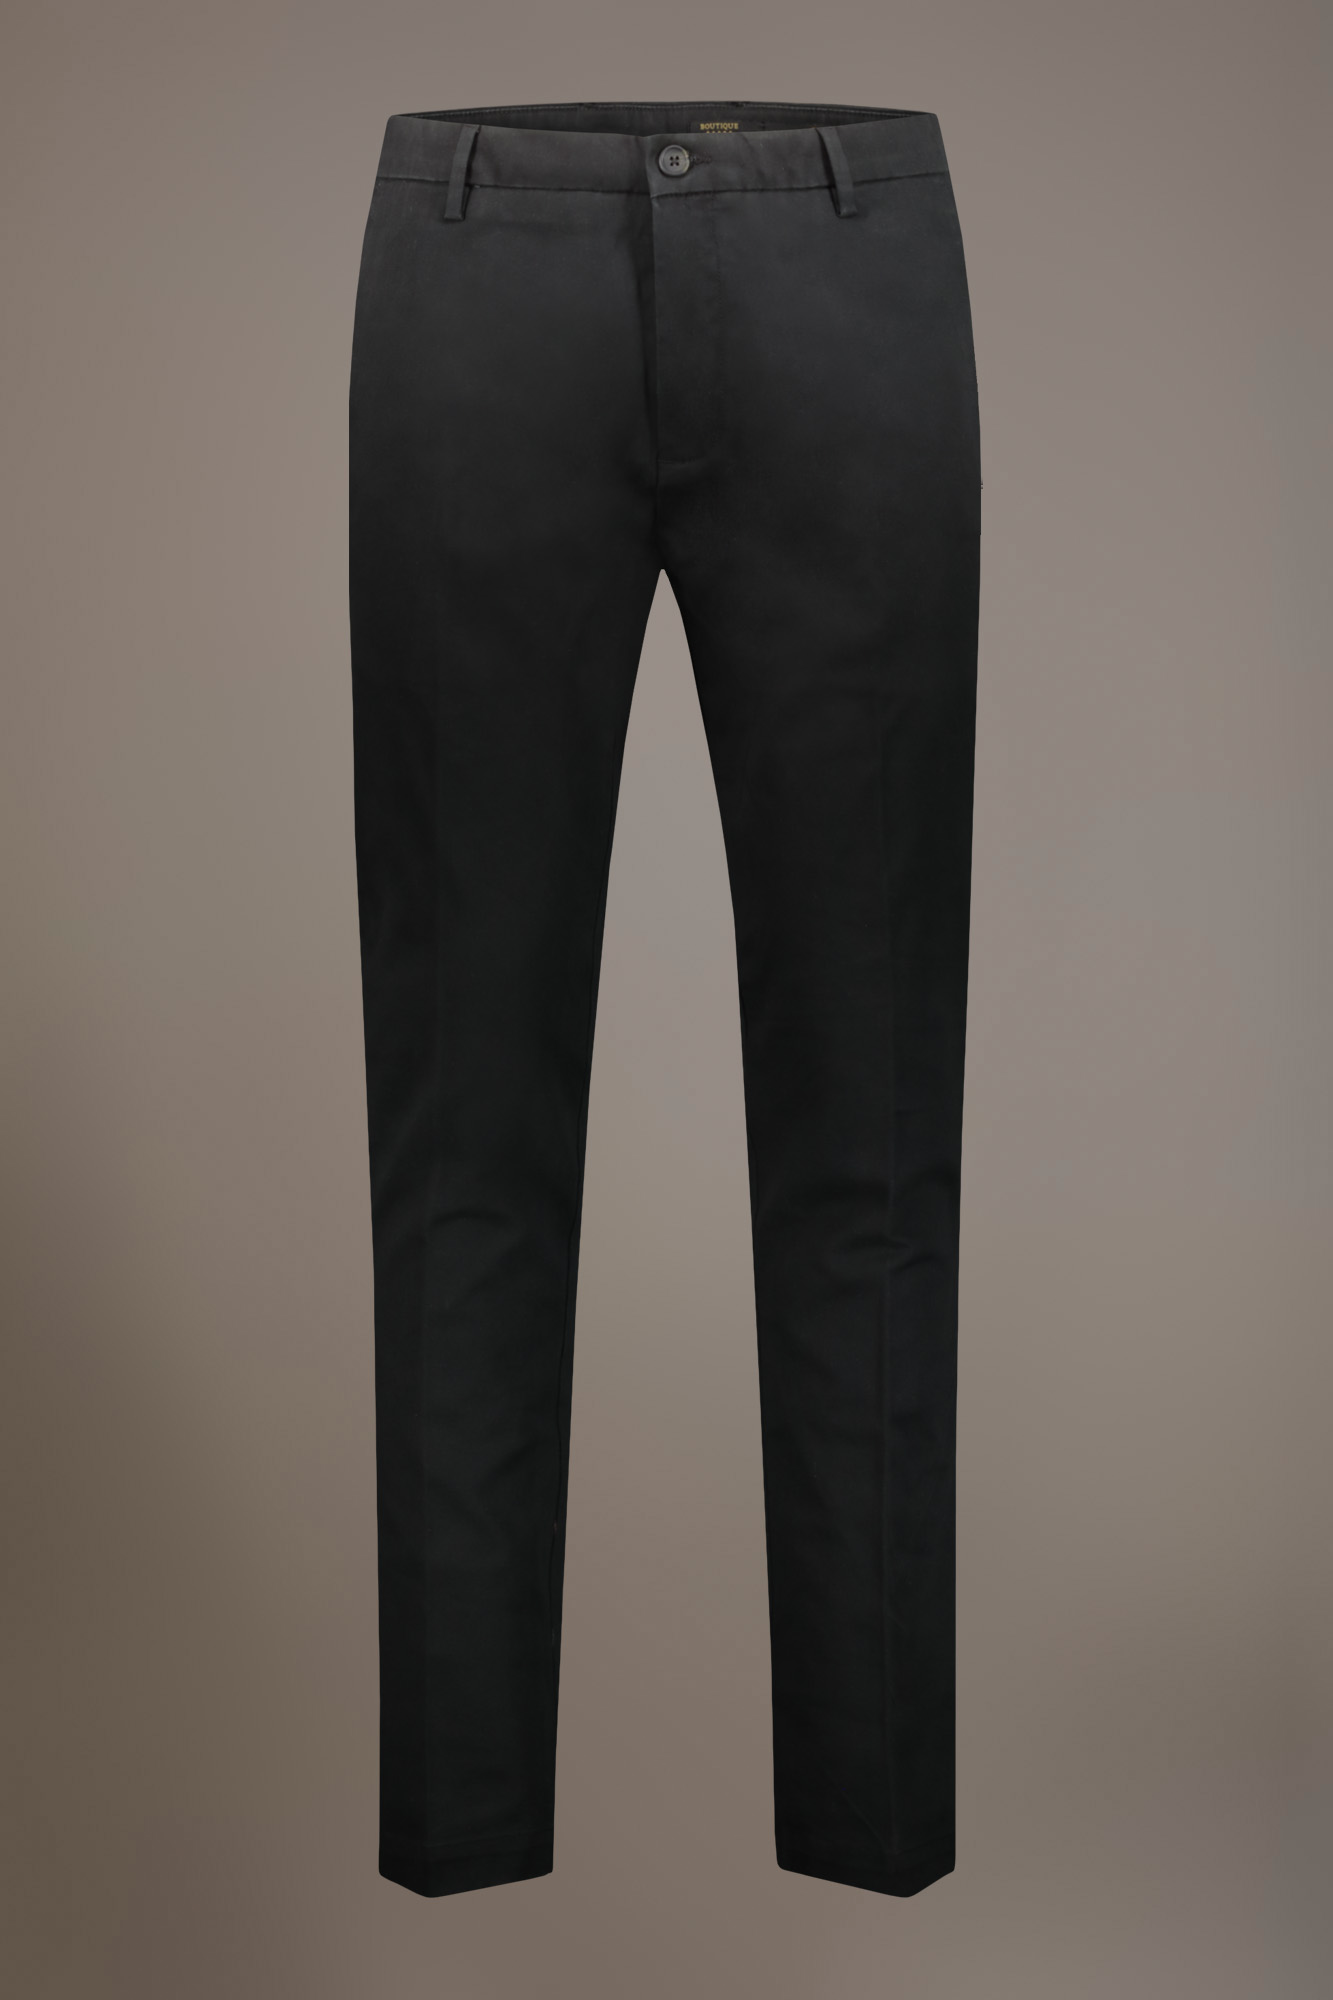 Pantalone chino classico regular fit tessuto twill elasticizzato image number null